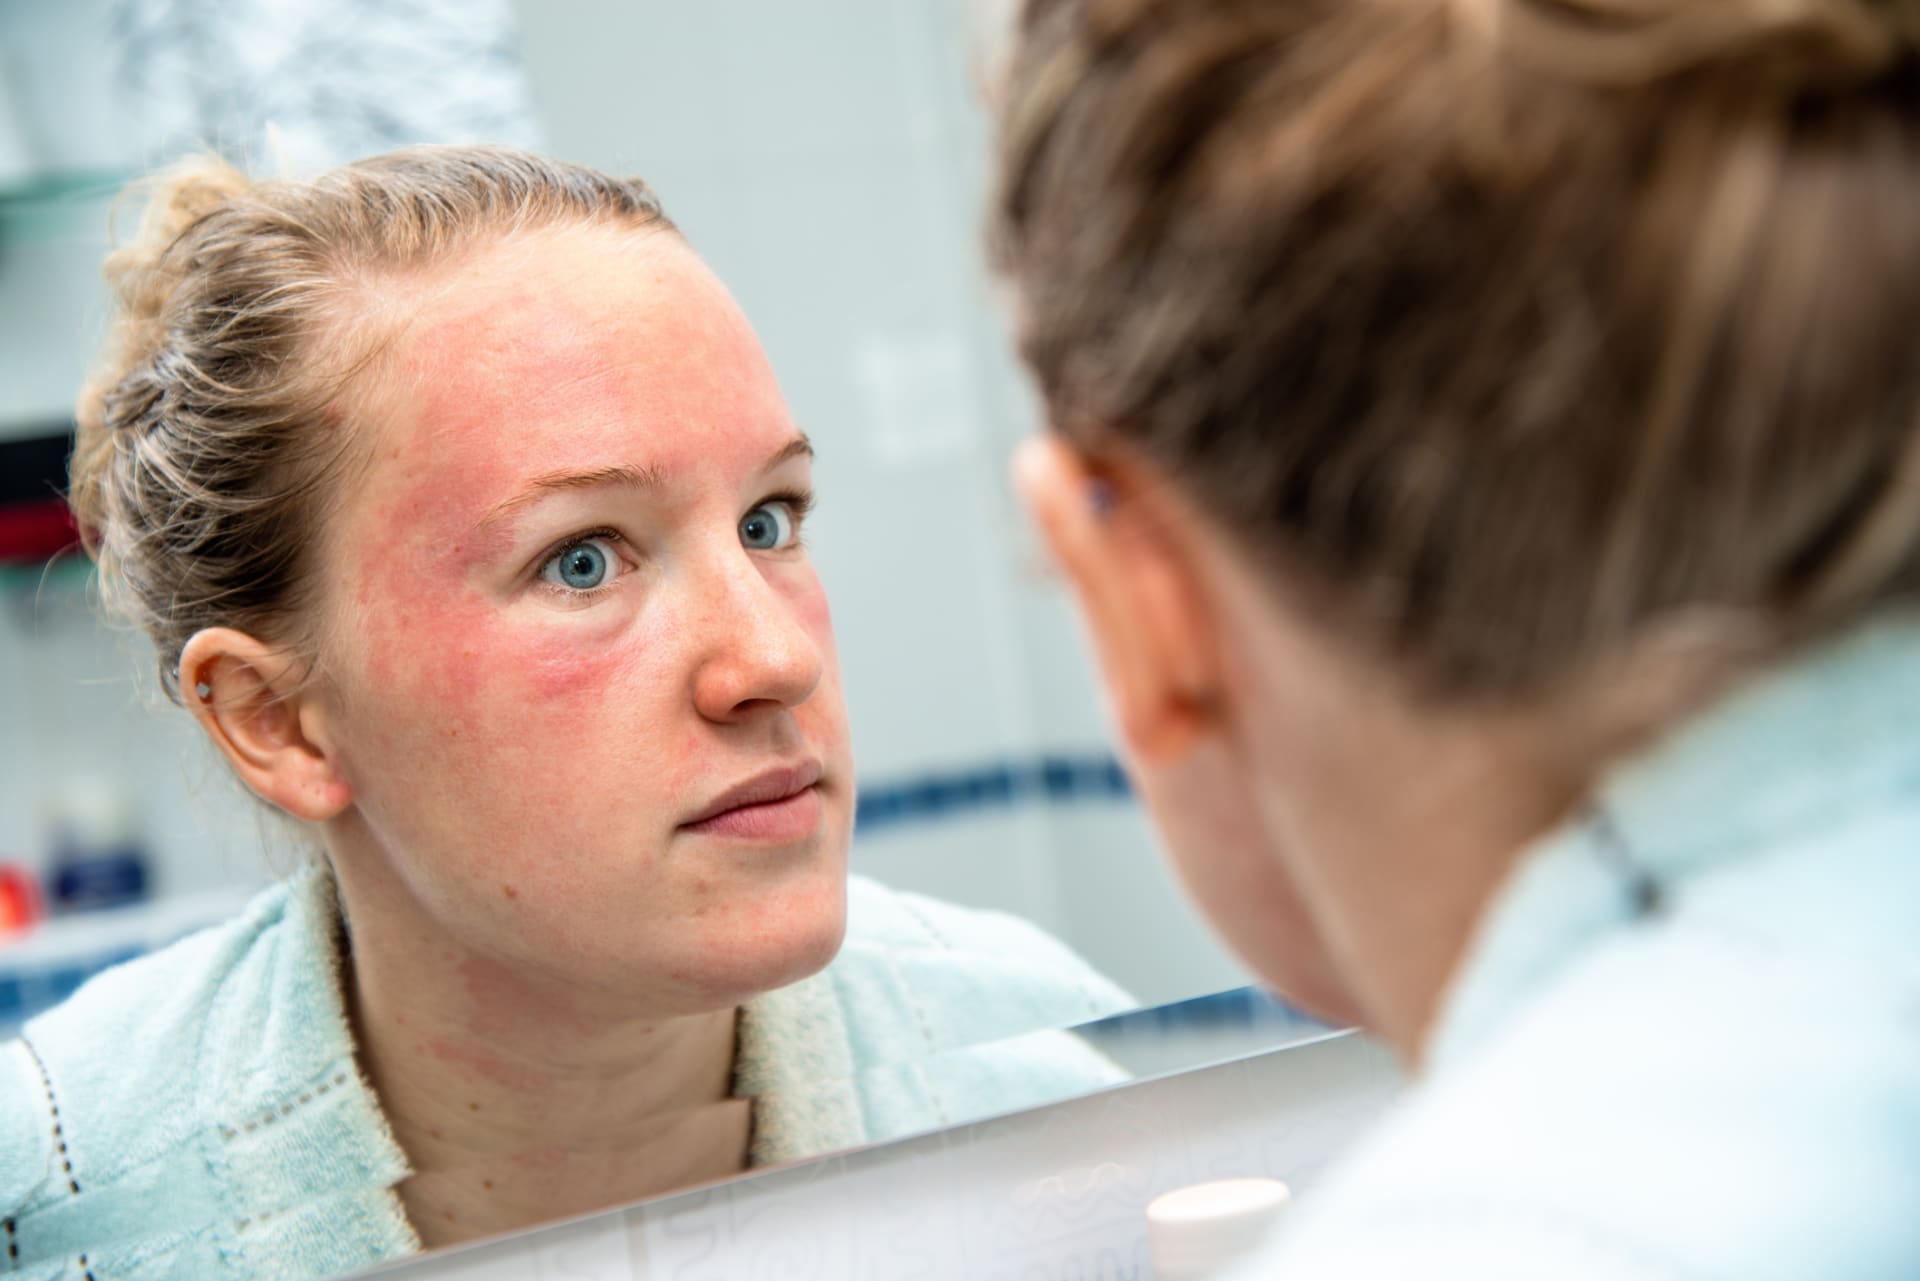 Periorální dermatitida může vyústit v další kožní nemoc, tzv. růžovku